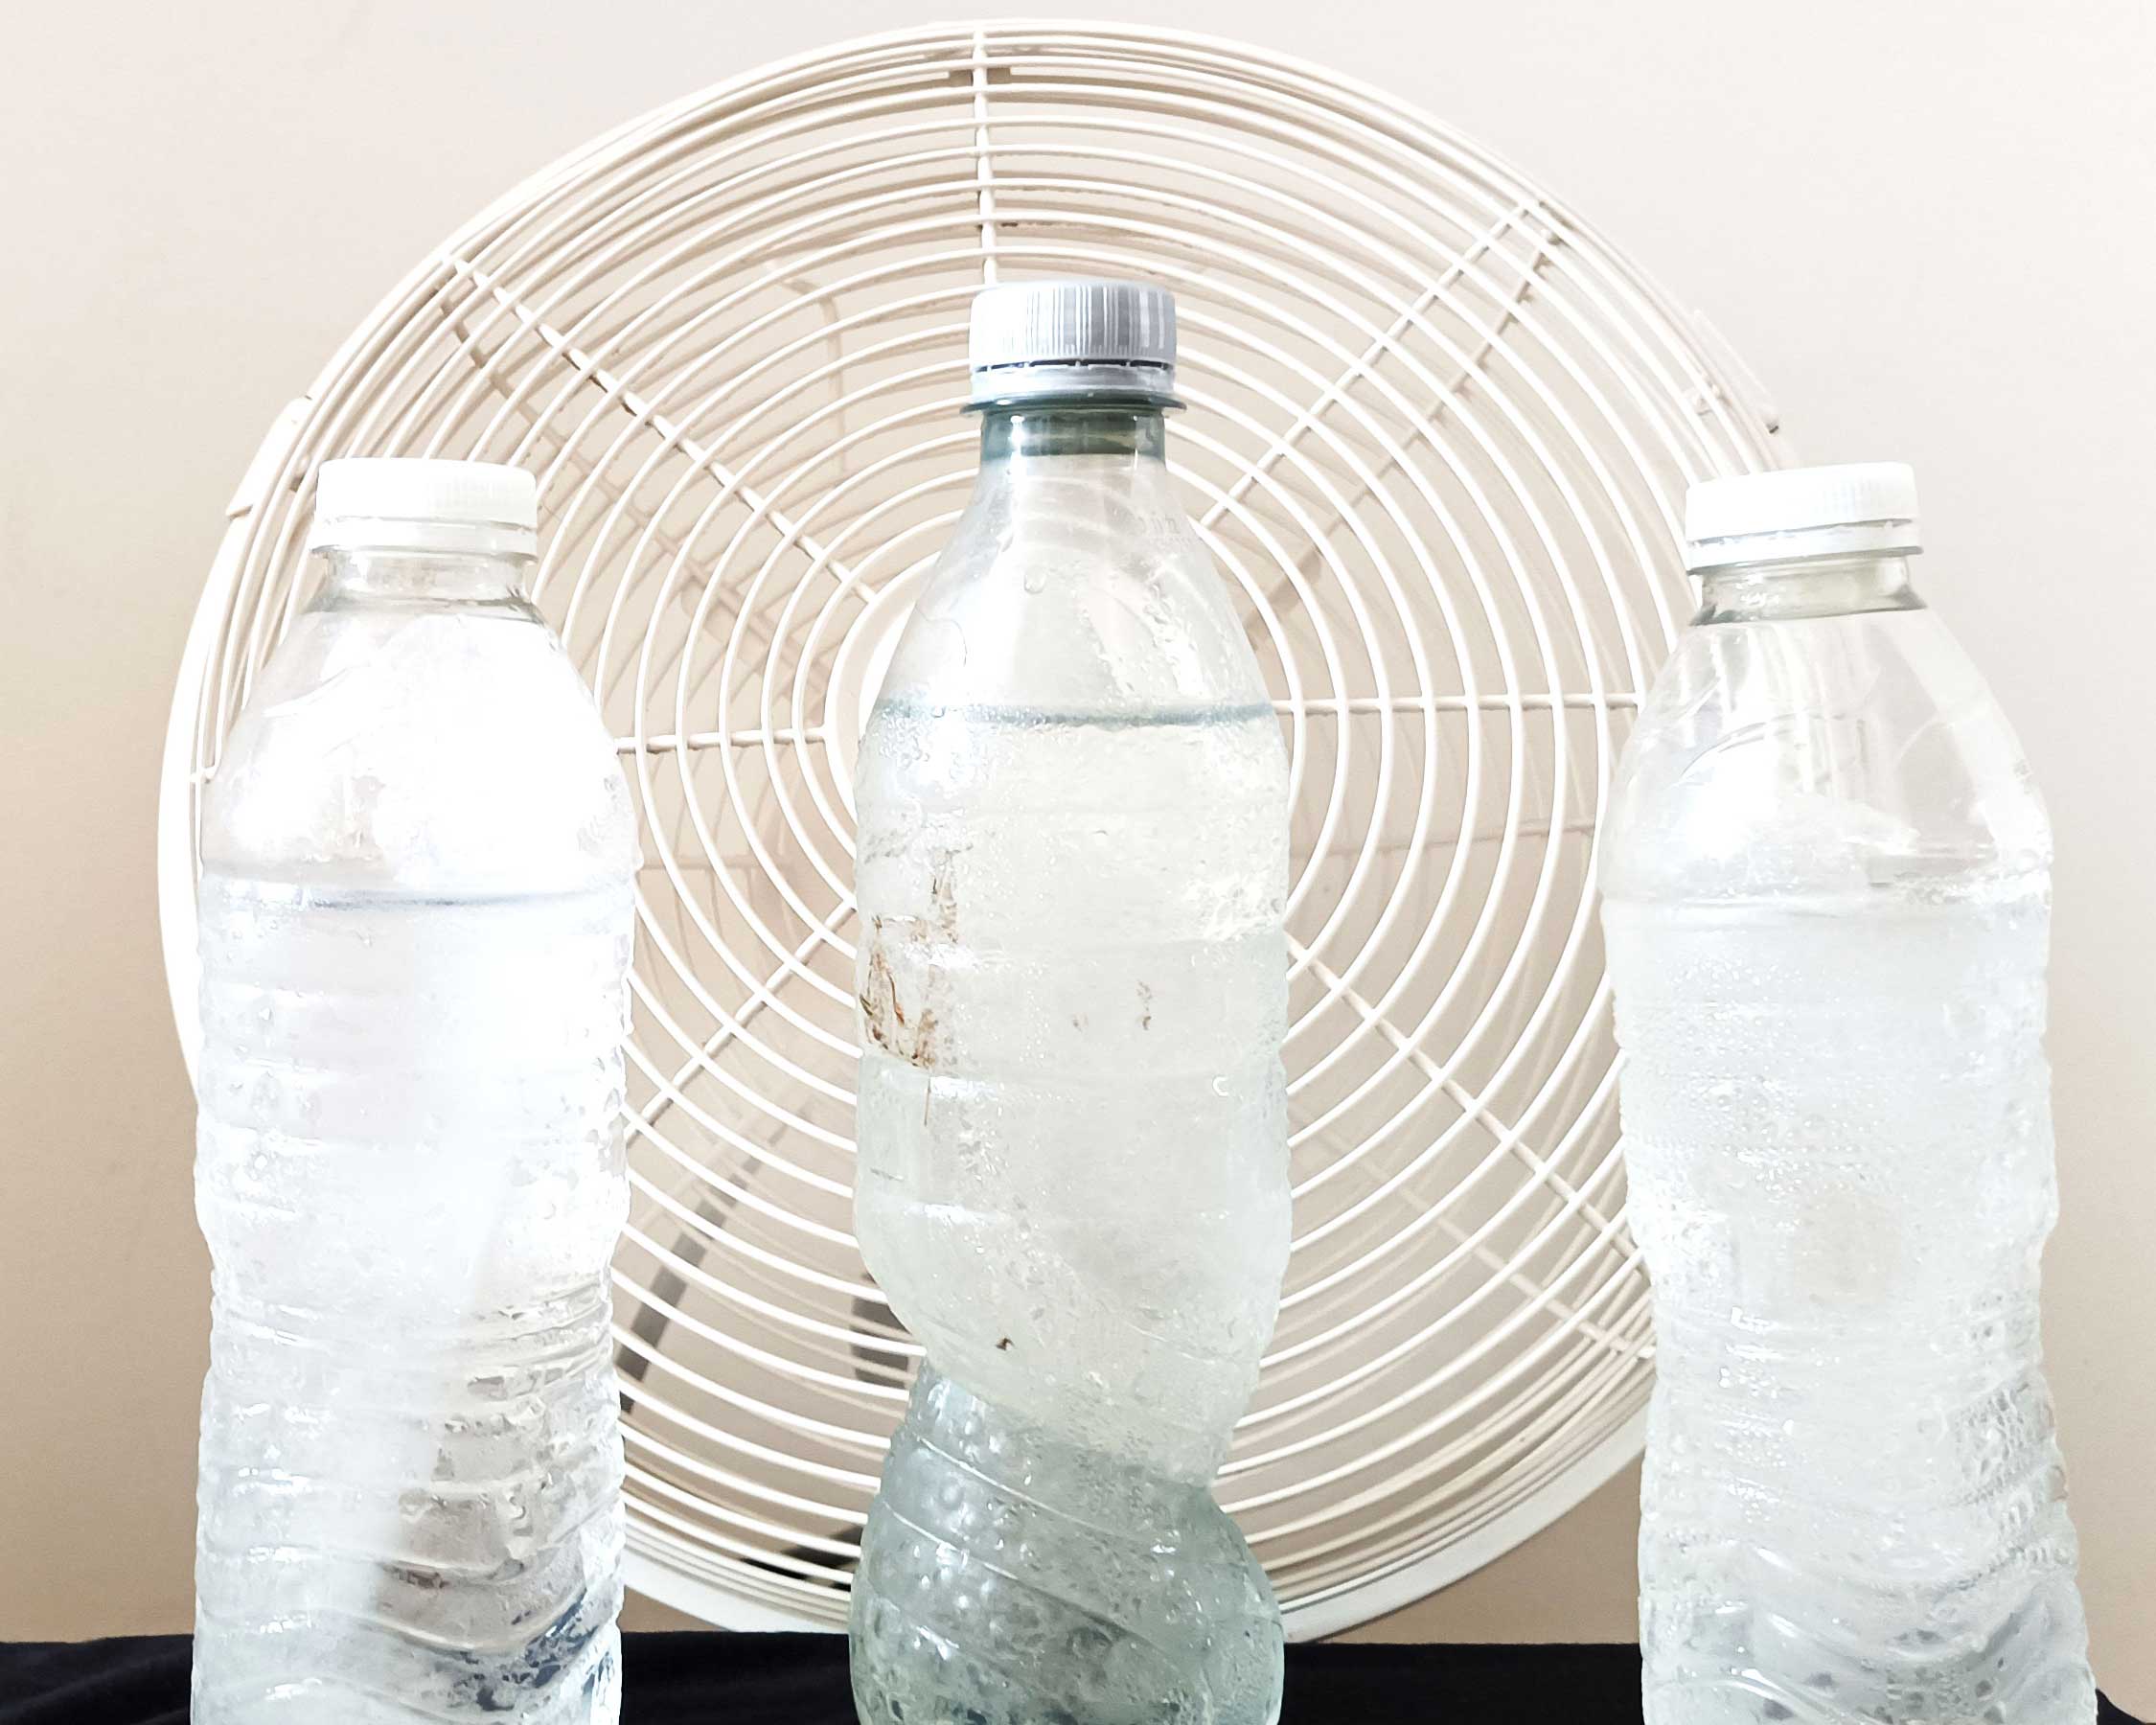 Drei Wasserflaschen in sicherer Entfernung vom elektrischen Ventilator, um den Raum zu kühlen